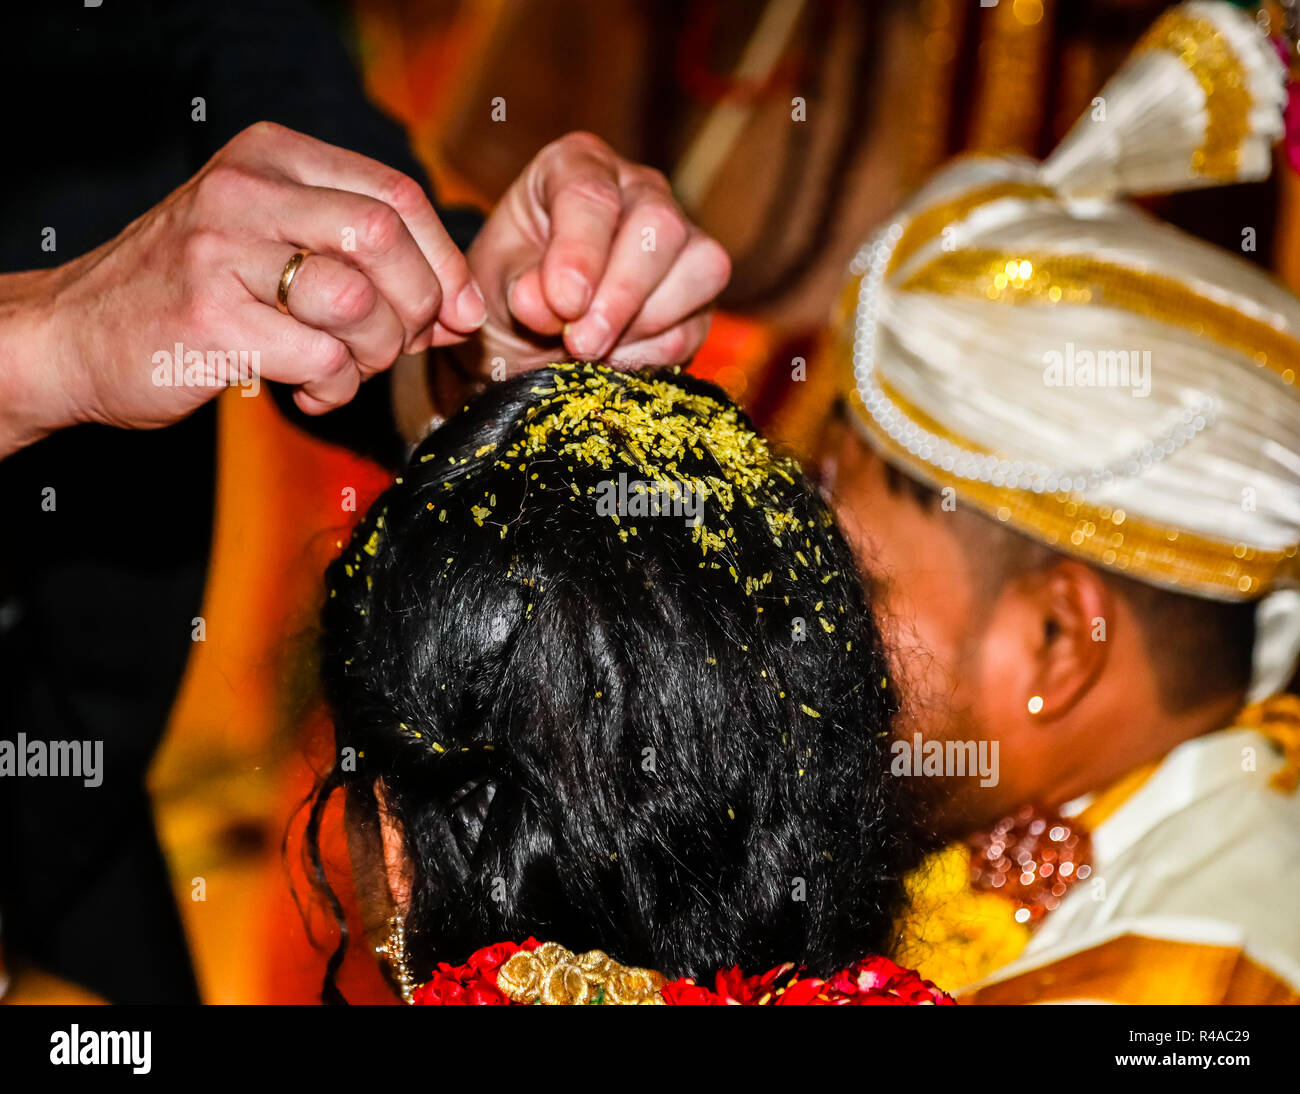 Die tamilischen hinduistischen Hochzeitszeremonie in einer Dortmunder Tempel in Deutschland Stockfoto